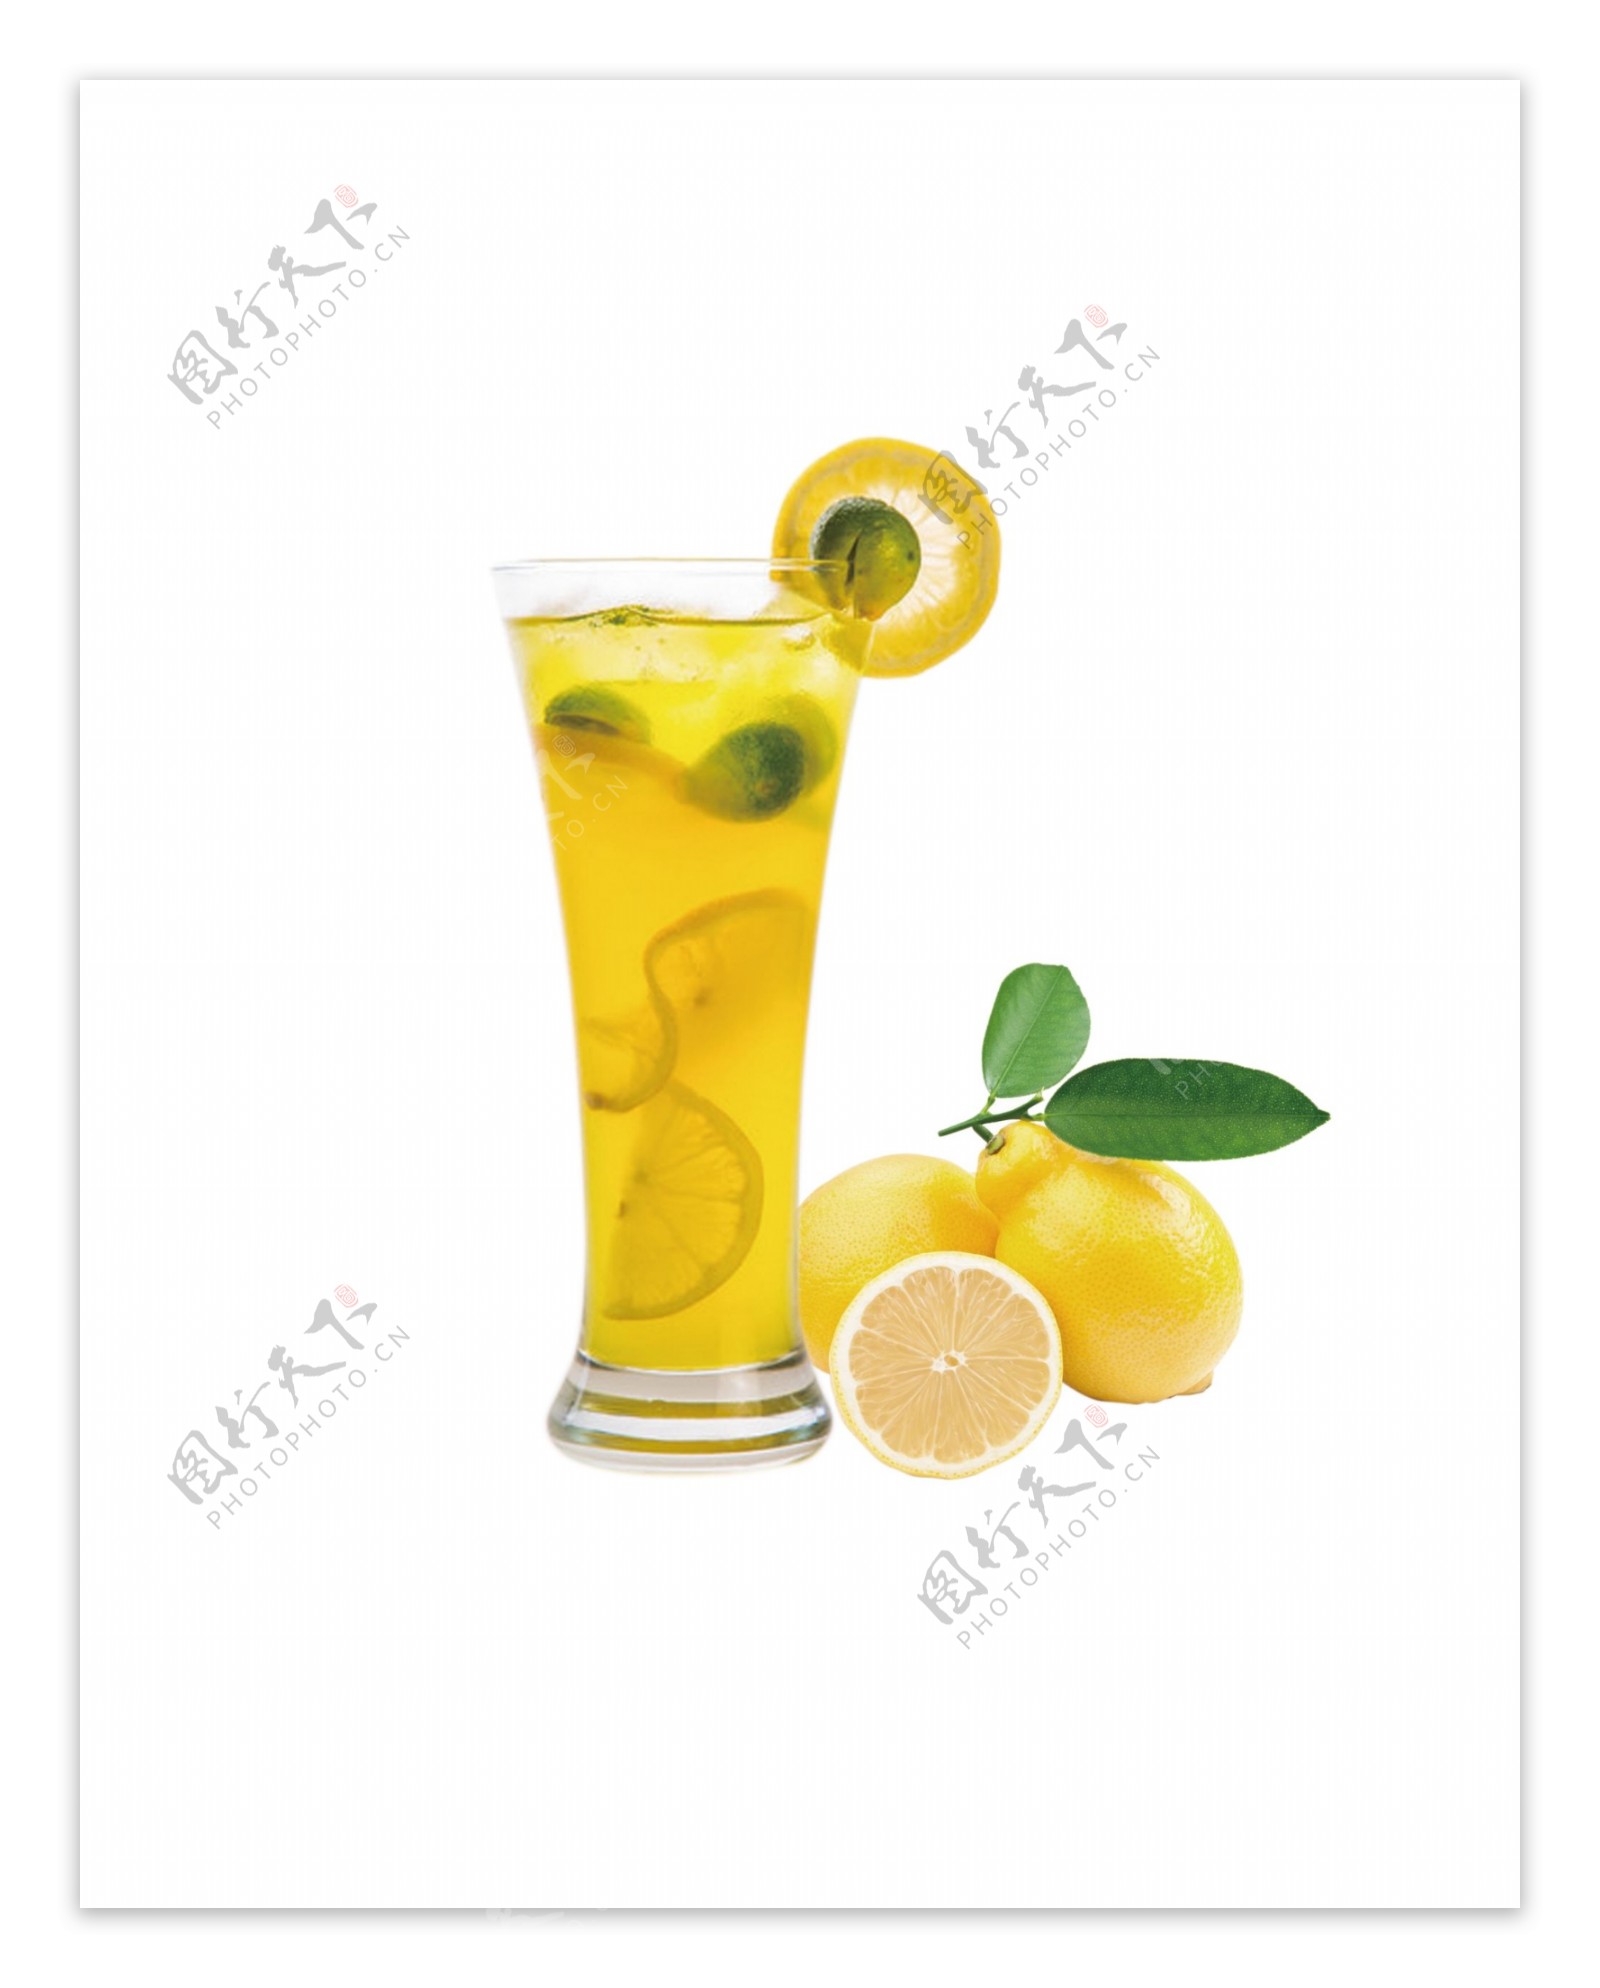 柠檬果汁